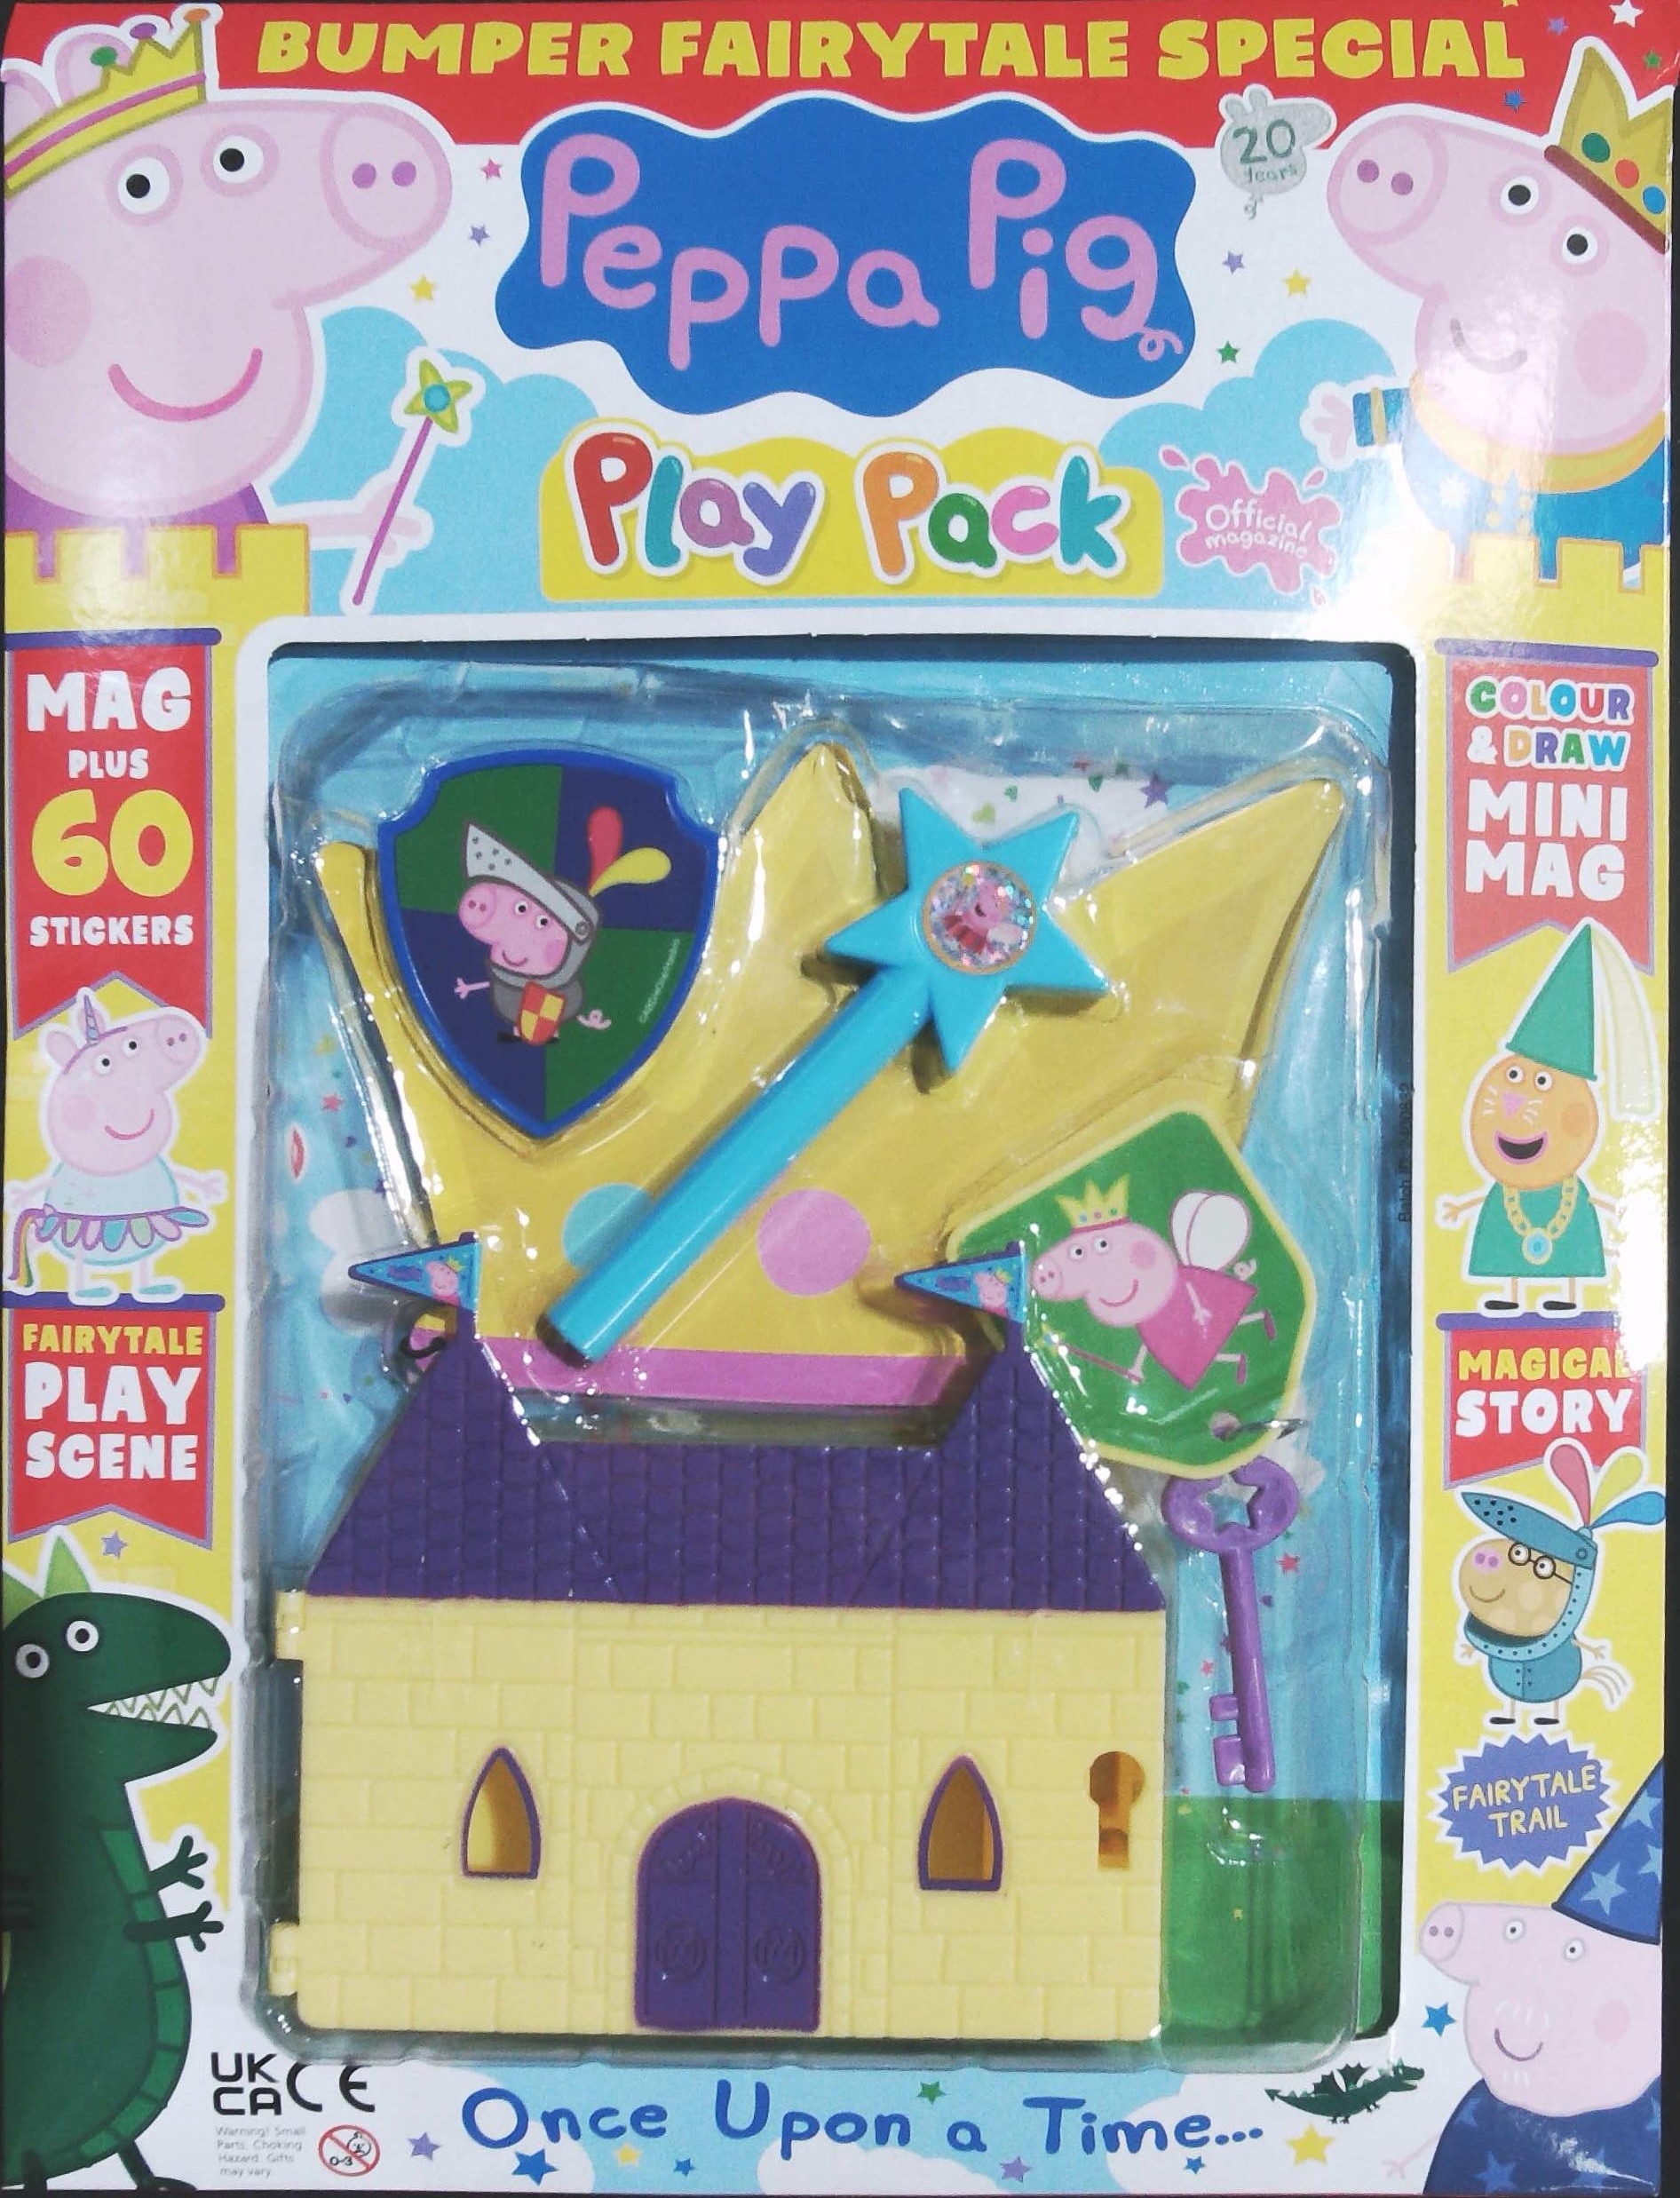 PEPPA PIG PLAY PACK MAG